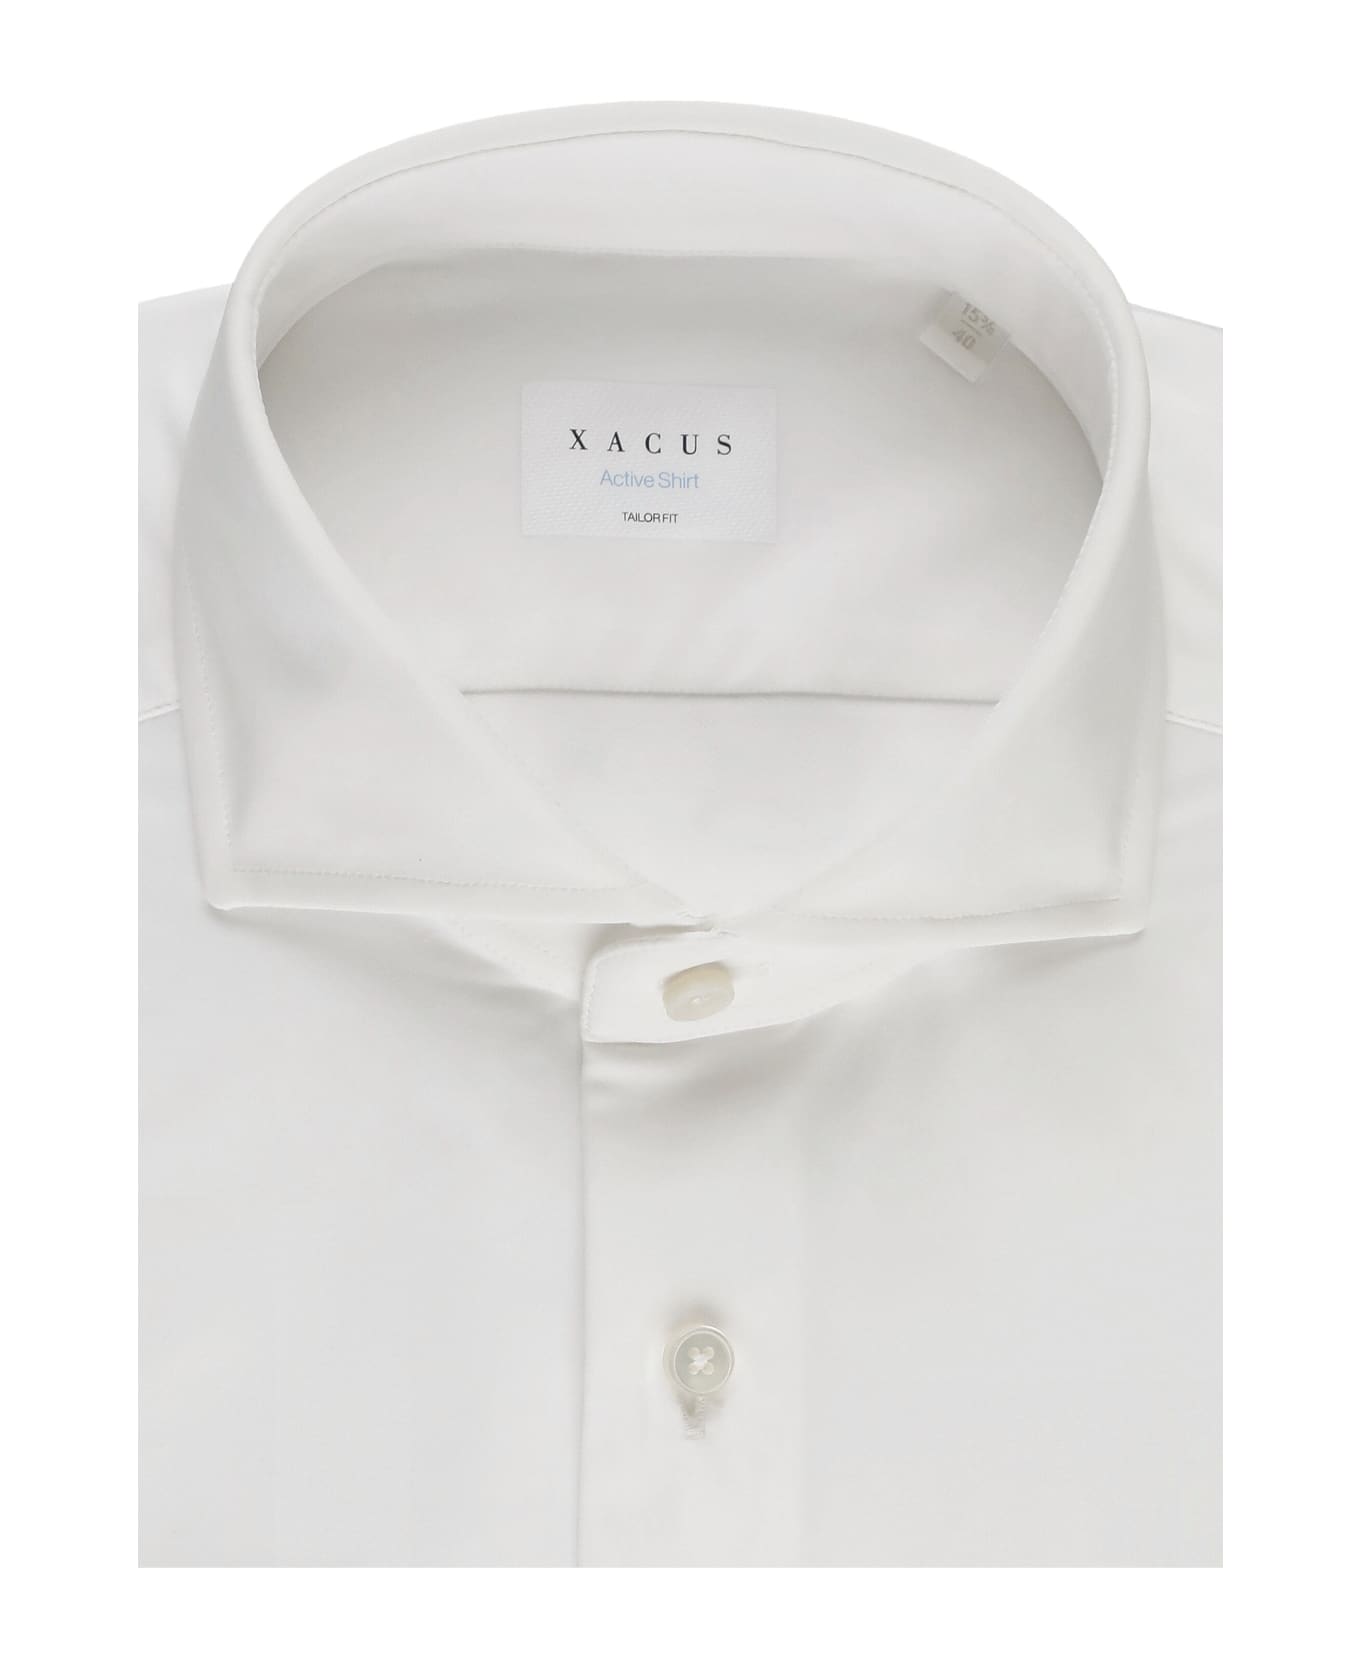 Xacus Active Shirt - White